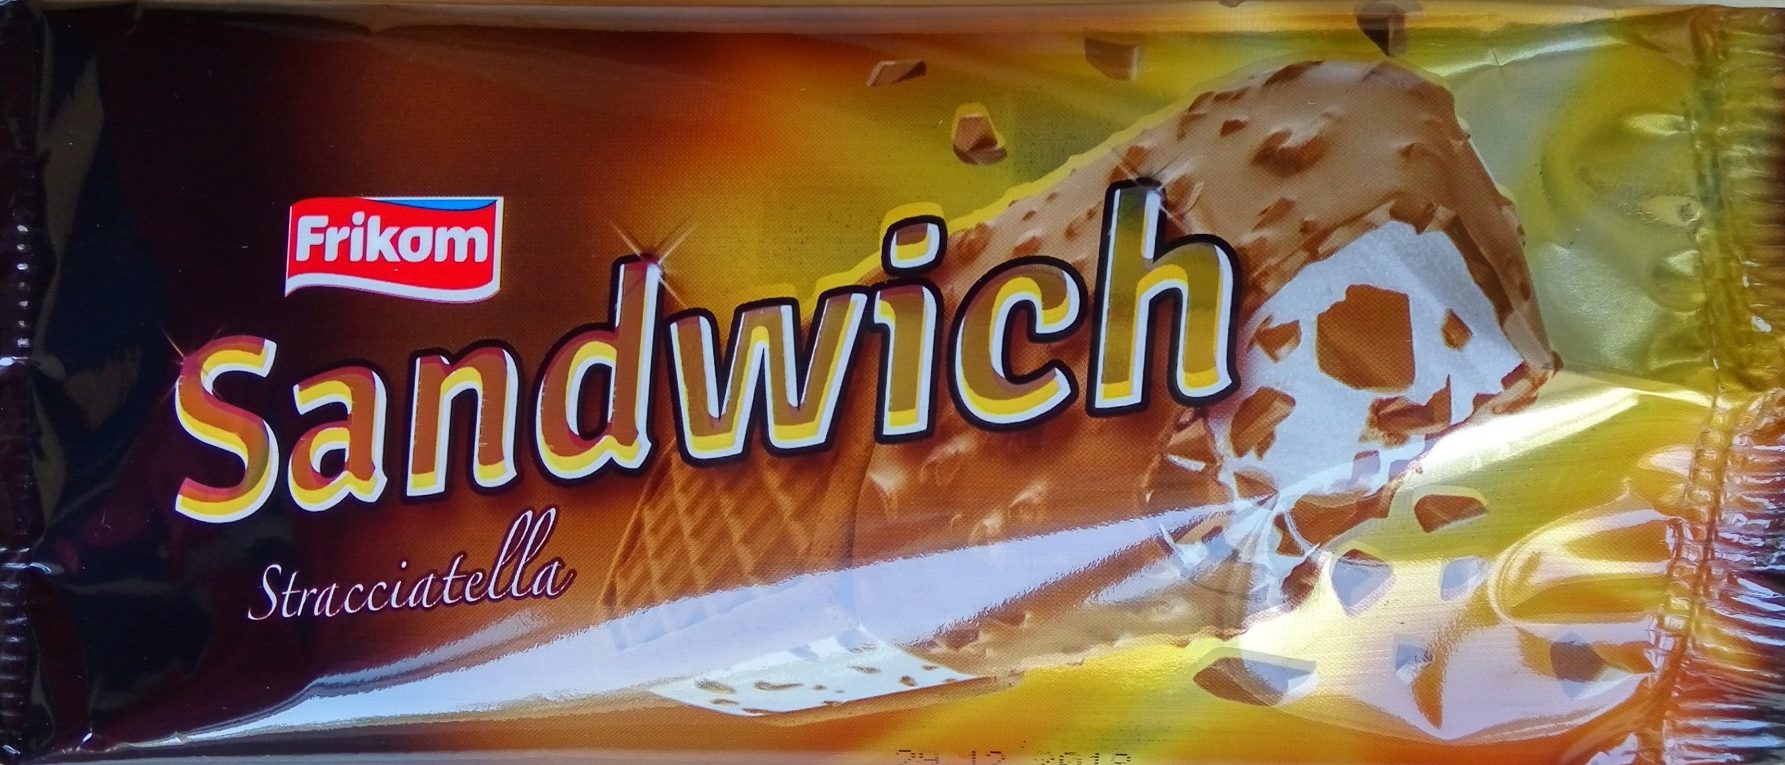 Sandwich stracciatella - Product - sr